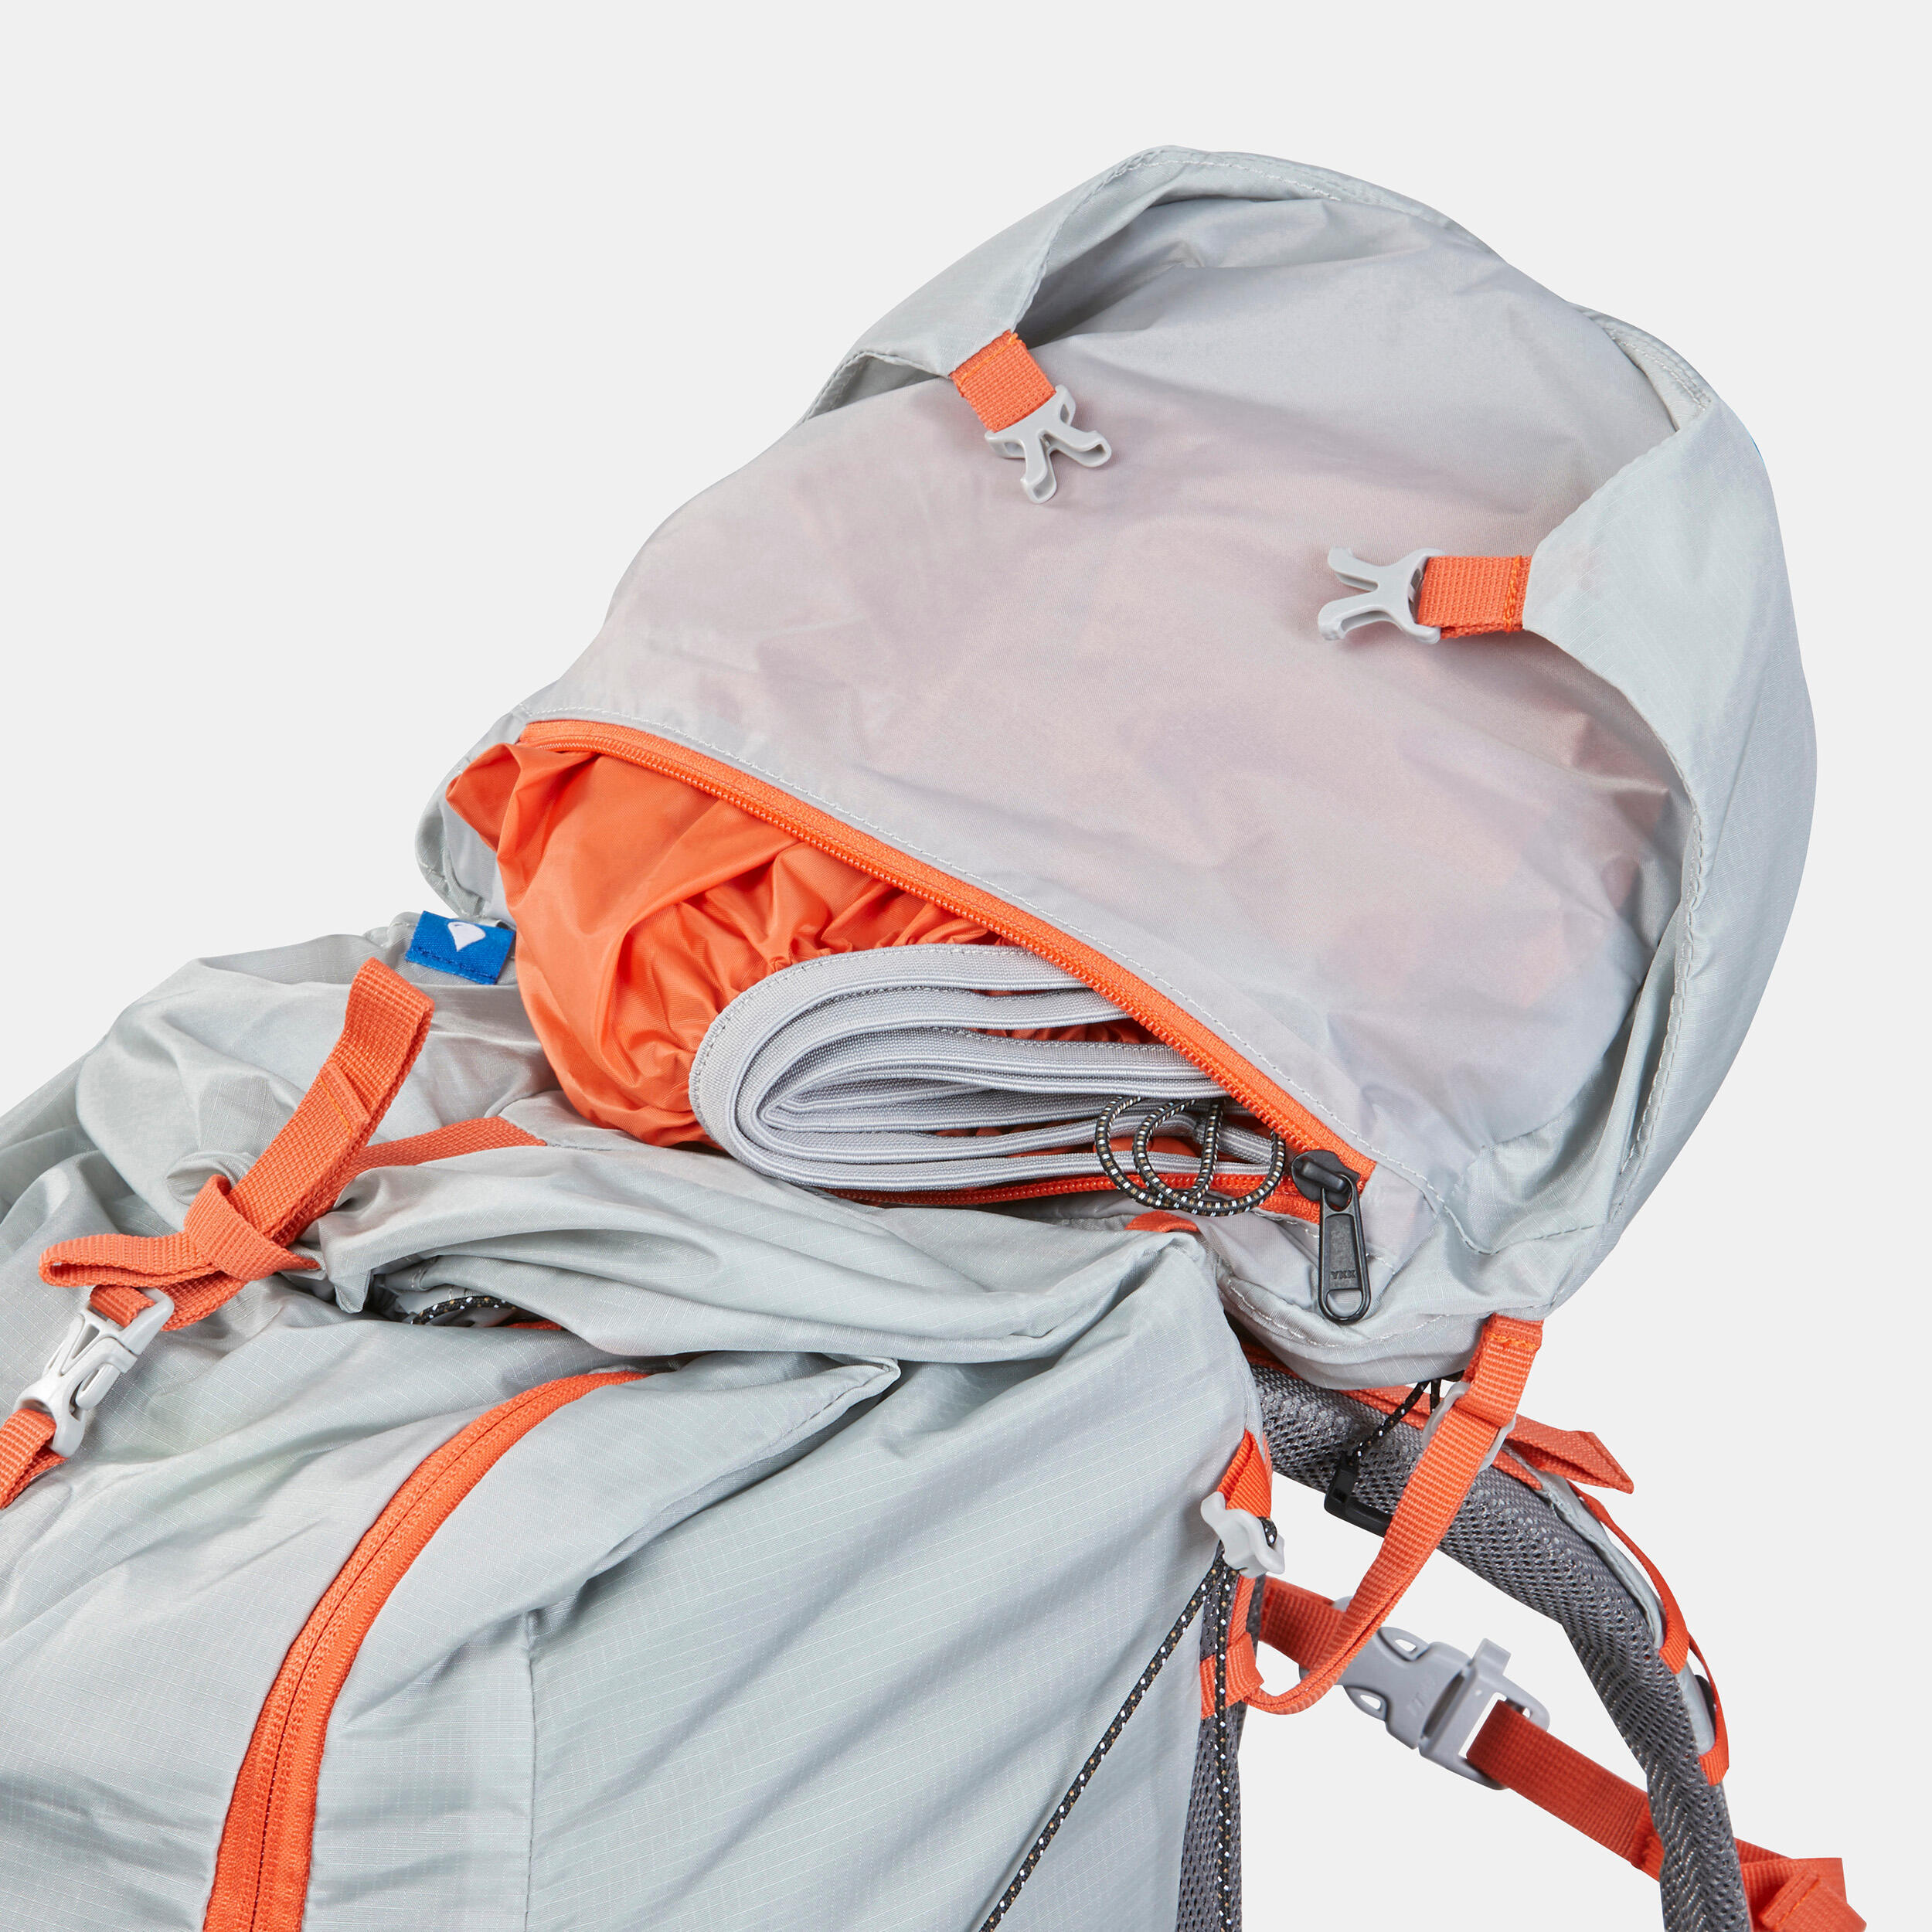 Women’s Ultralight Trekking Backpack 45+10 L - MT900 UL 15/18